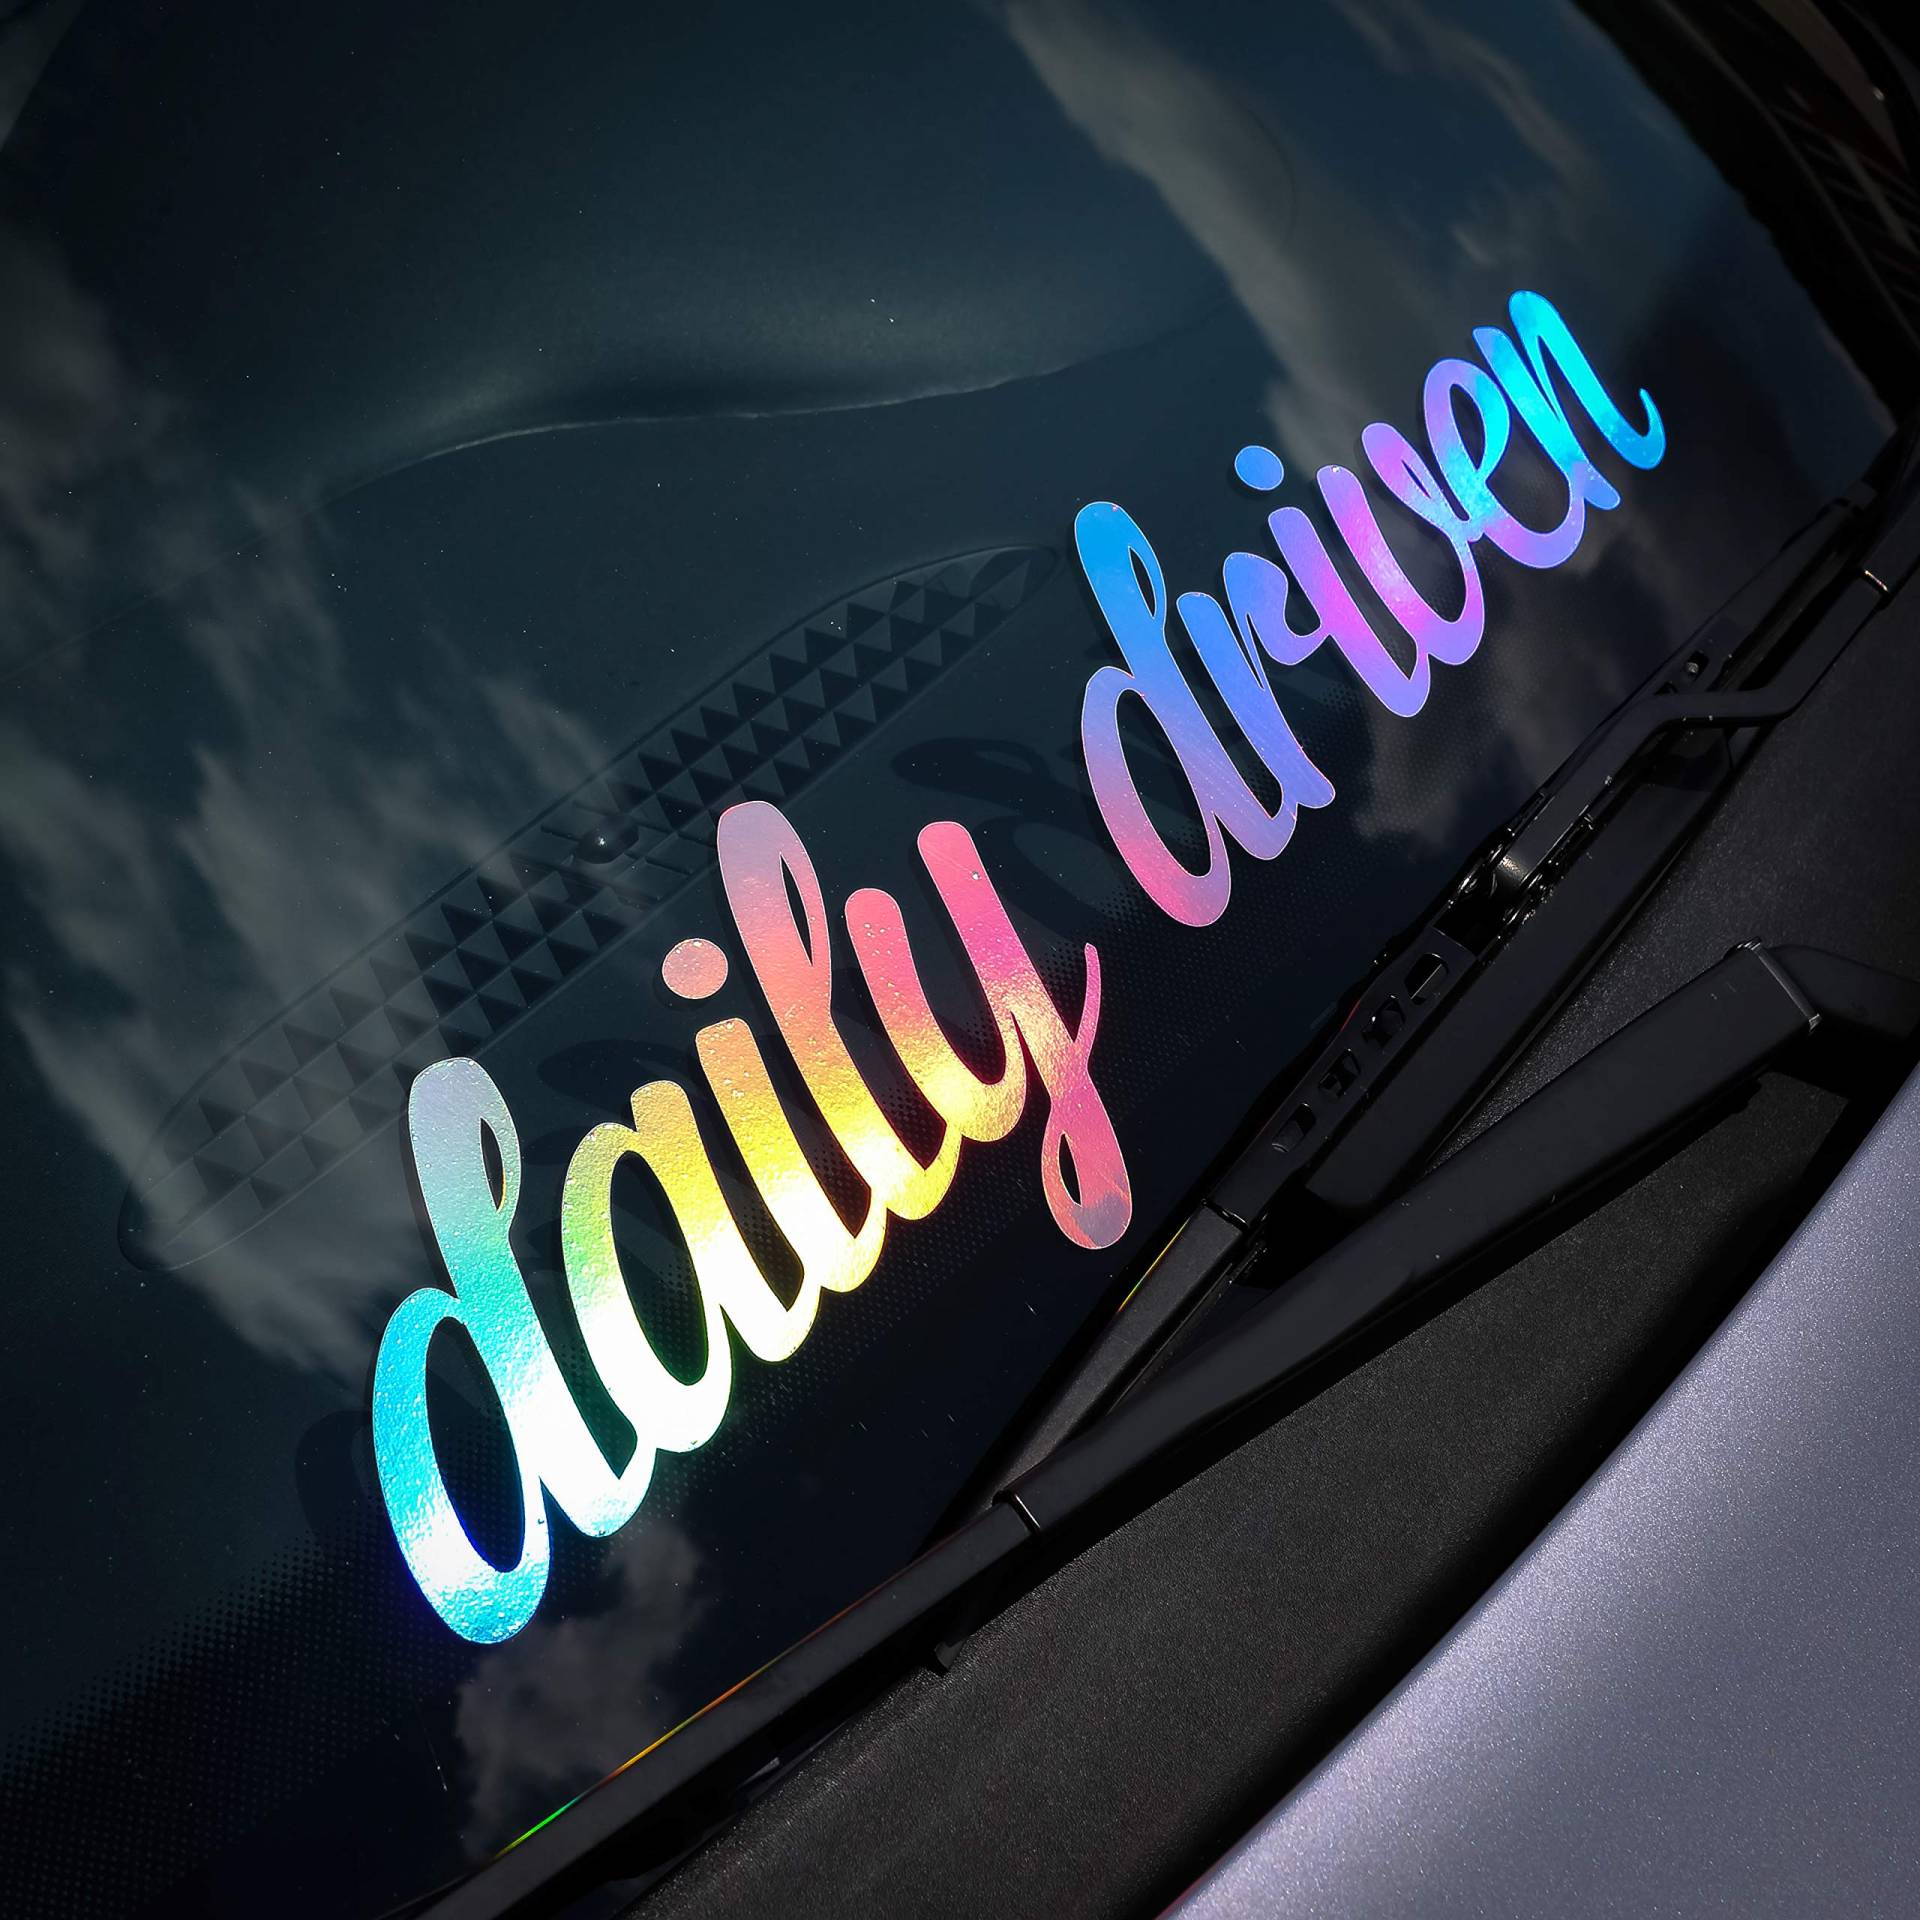 Daily Driven Aufkleber oilslick Autoaufkleber Hologramm Frontscheiben Aufkleber Regenbogen Farben Sticker Heckscheibenaufkleber von 1A Style Sticker